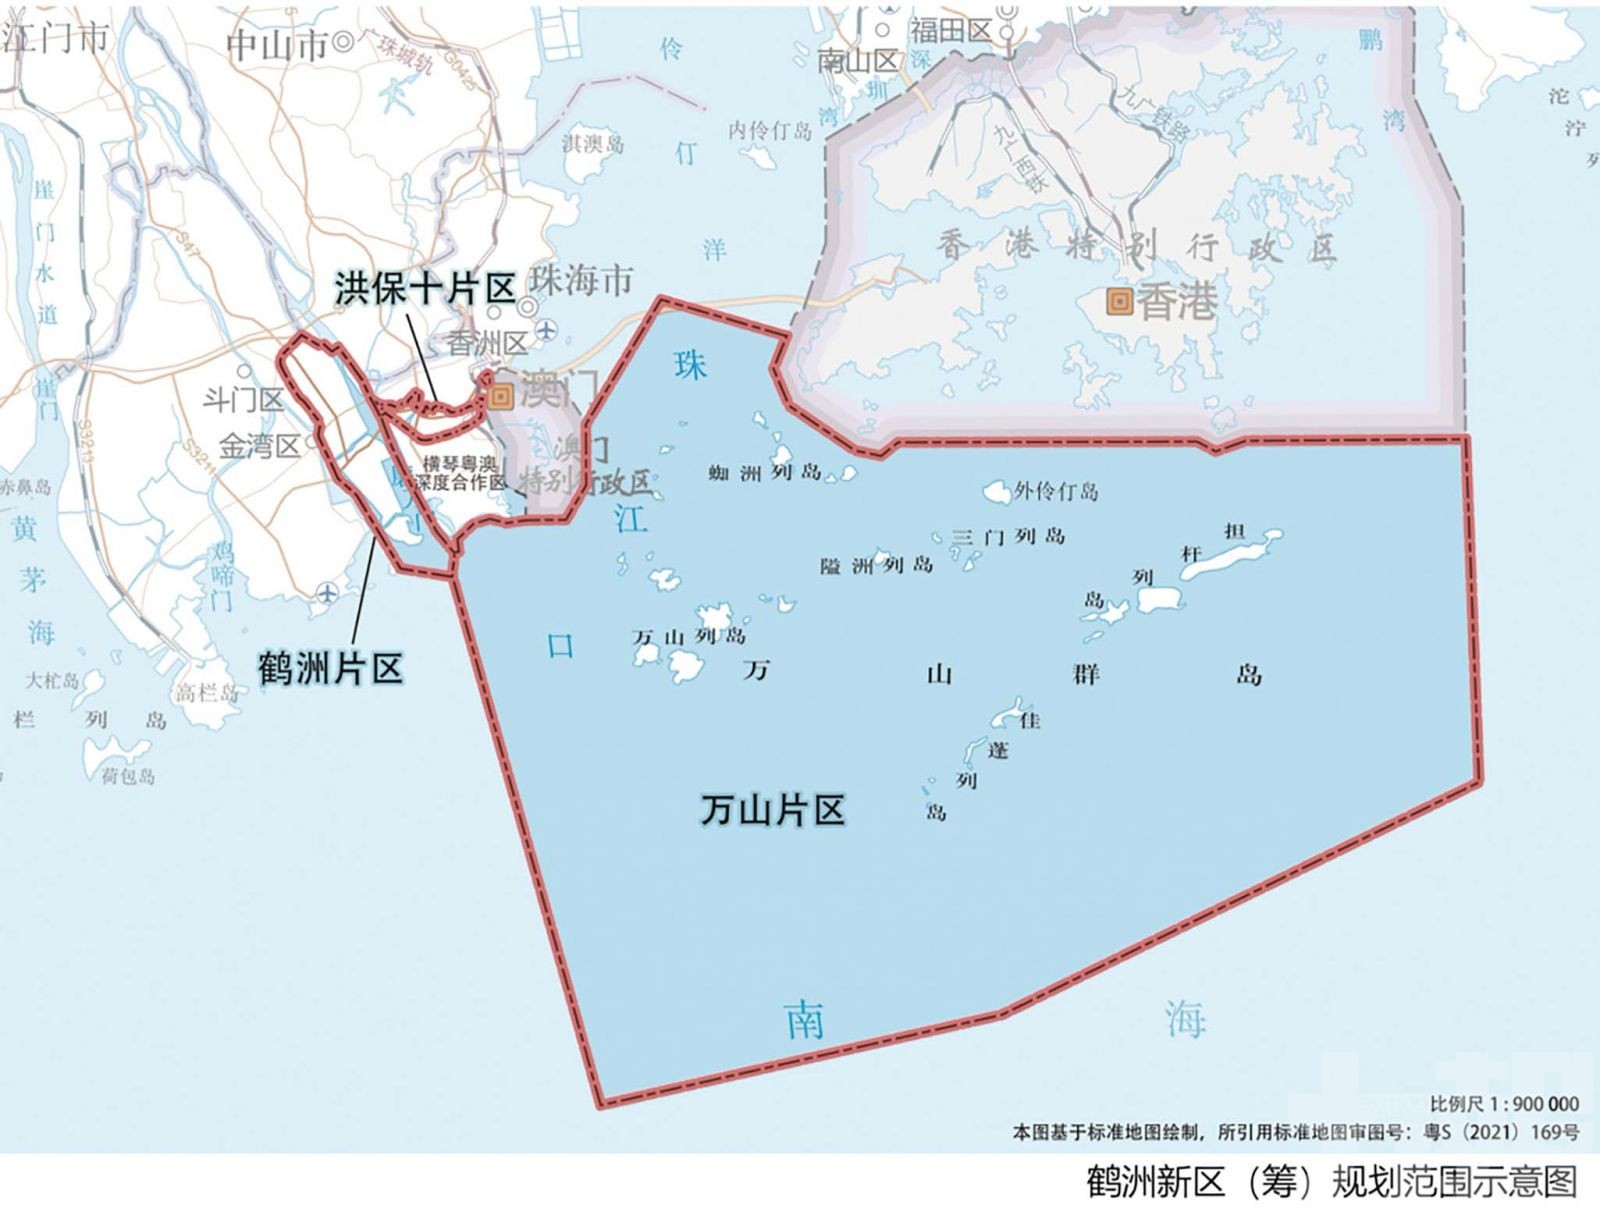 擬2025年成珠海新中心